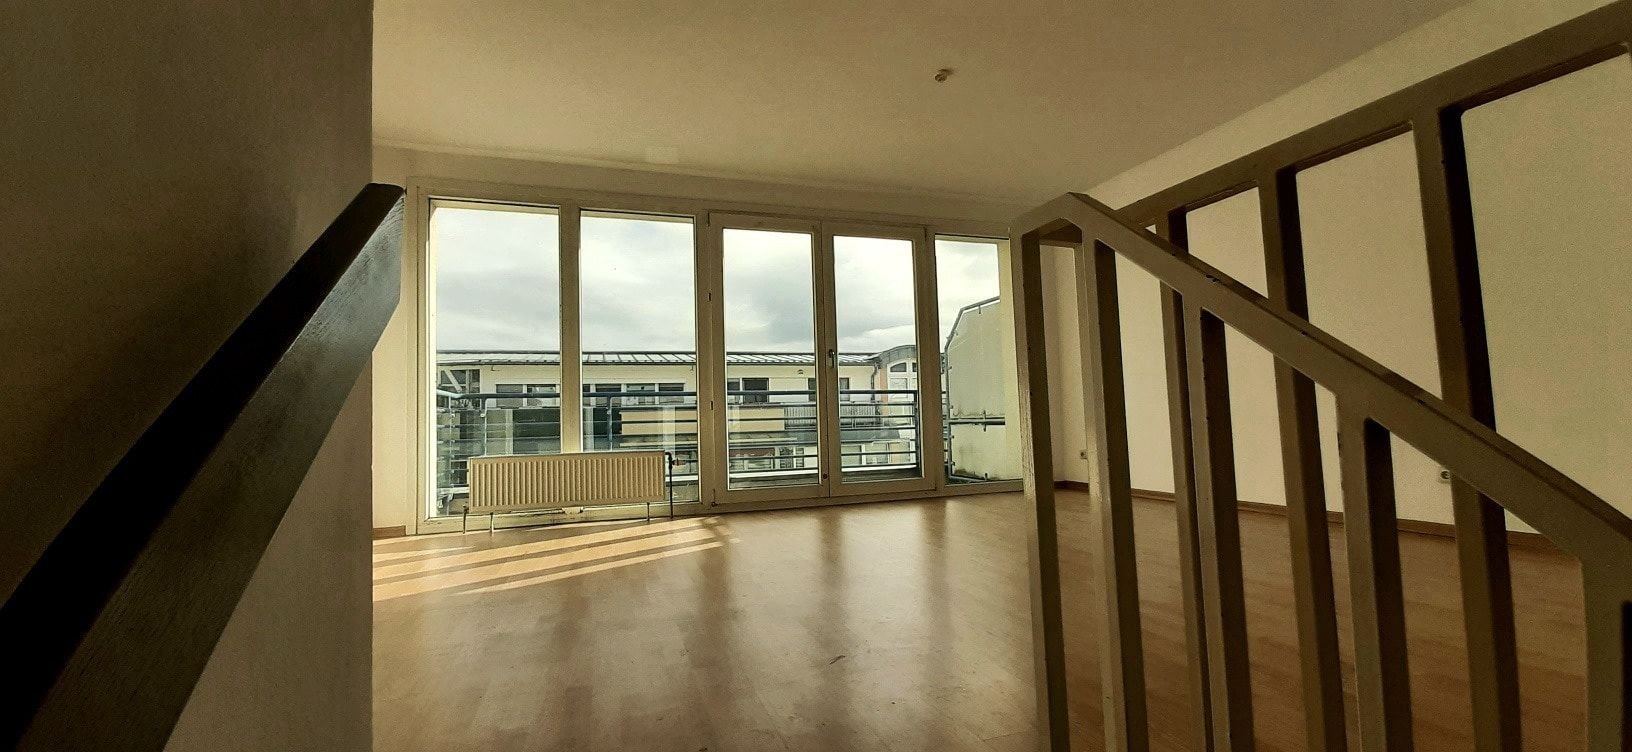 Wahnsinn - Zentrumsnahe Maisonette mit 2 Balkonen, was will man mehr? - Leipzig Neustadt-Neuschönefeld